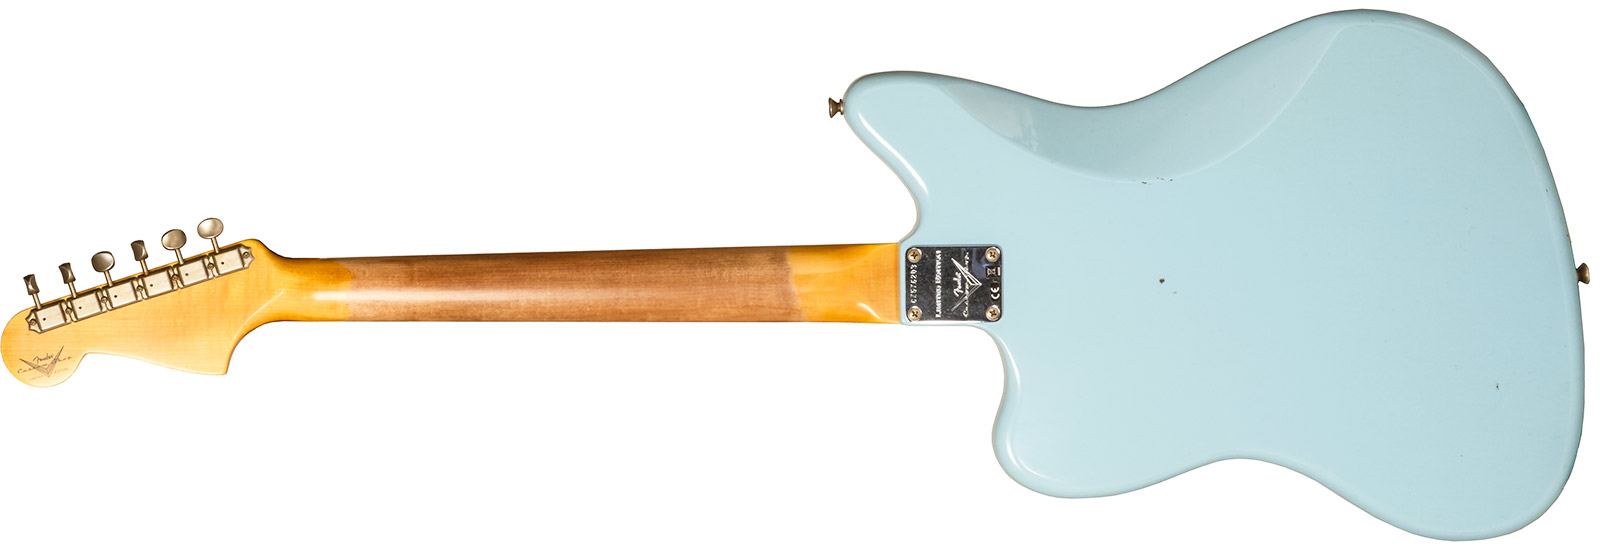 Fender Custom Shop Jazzmaster 1959 250k 2s Trem Rw #cz576203 - Journeyman Relic Aged Daphne Blue - Retro-rock elektrische gitaar - Variation 1